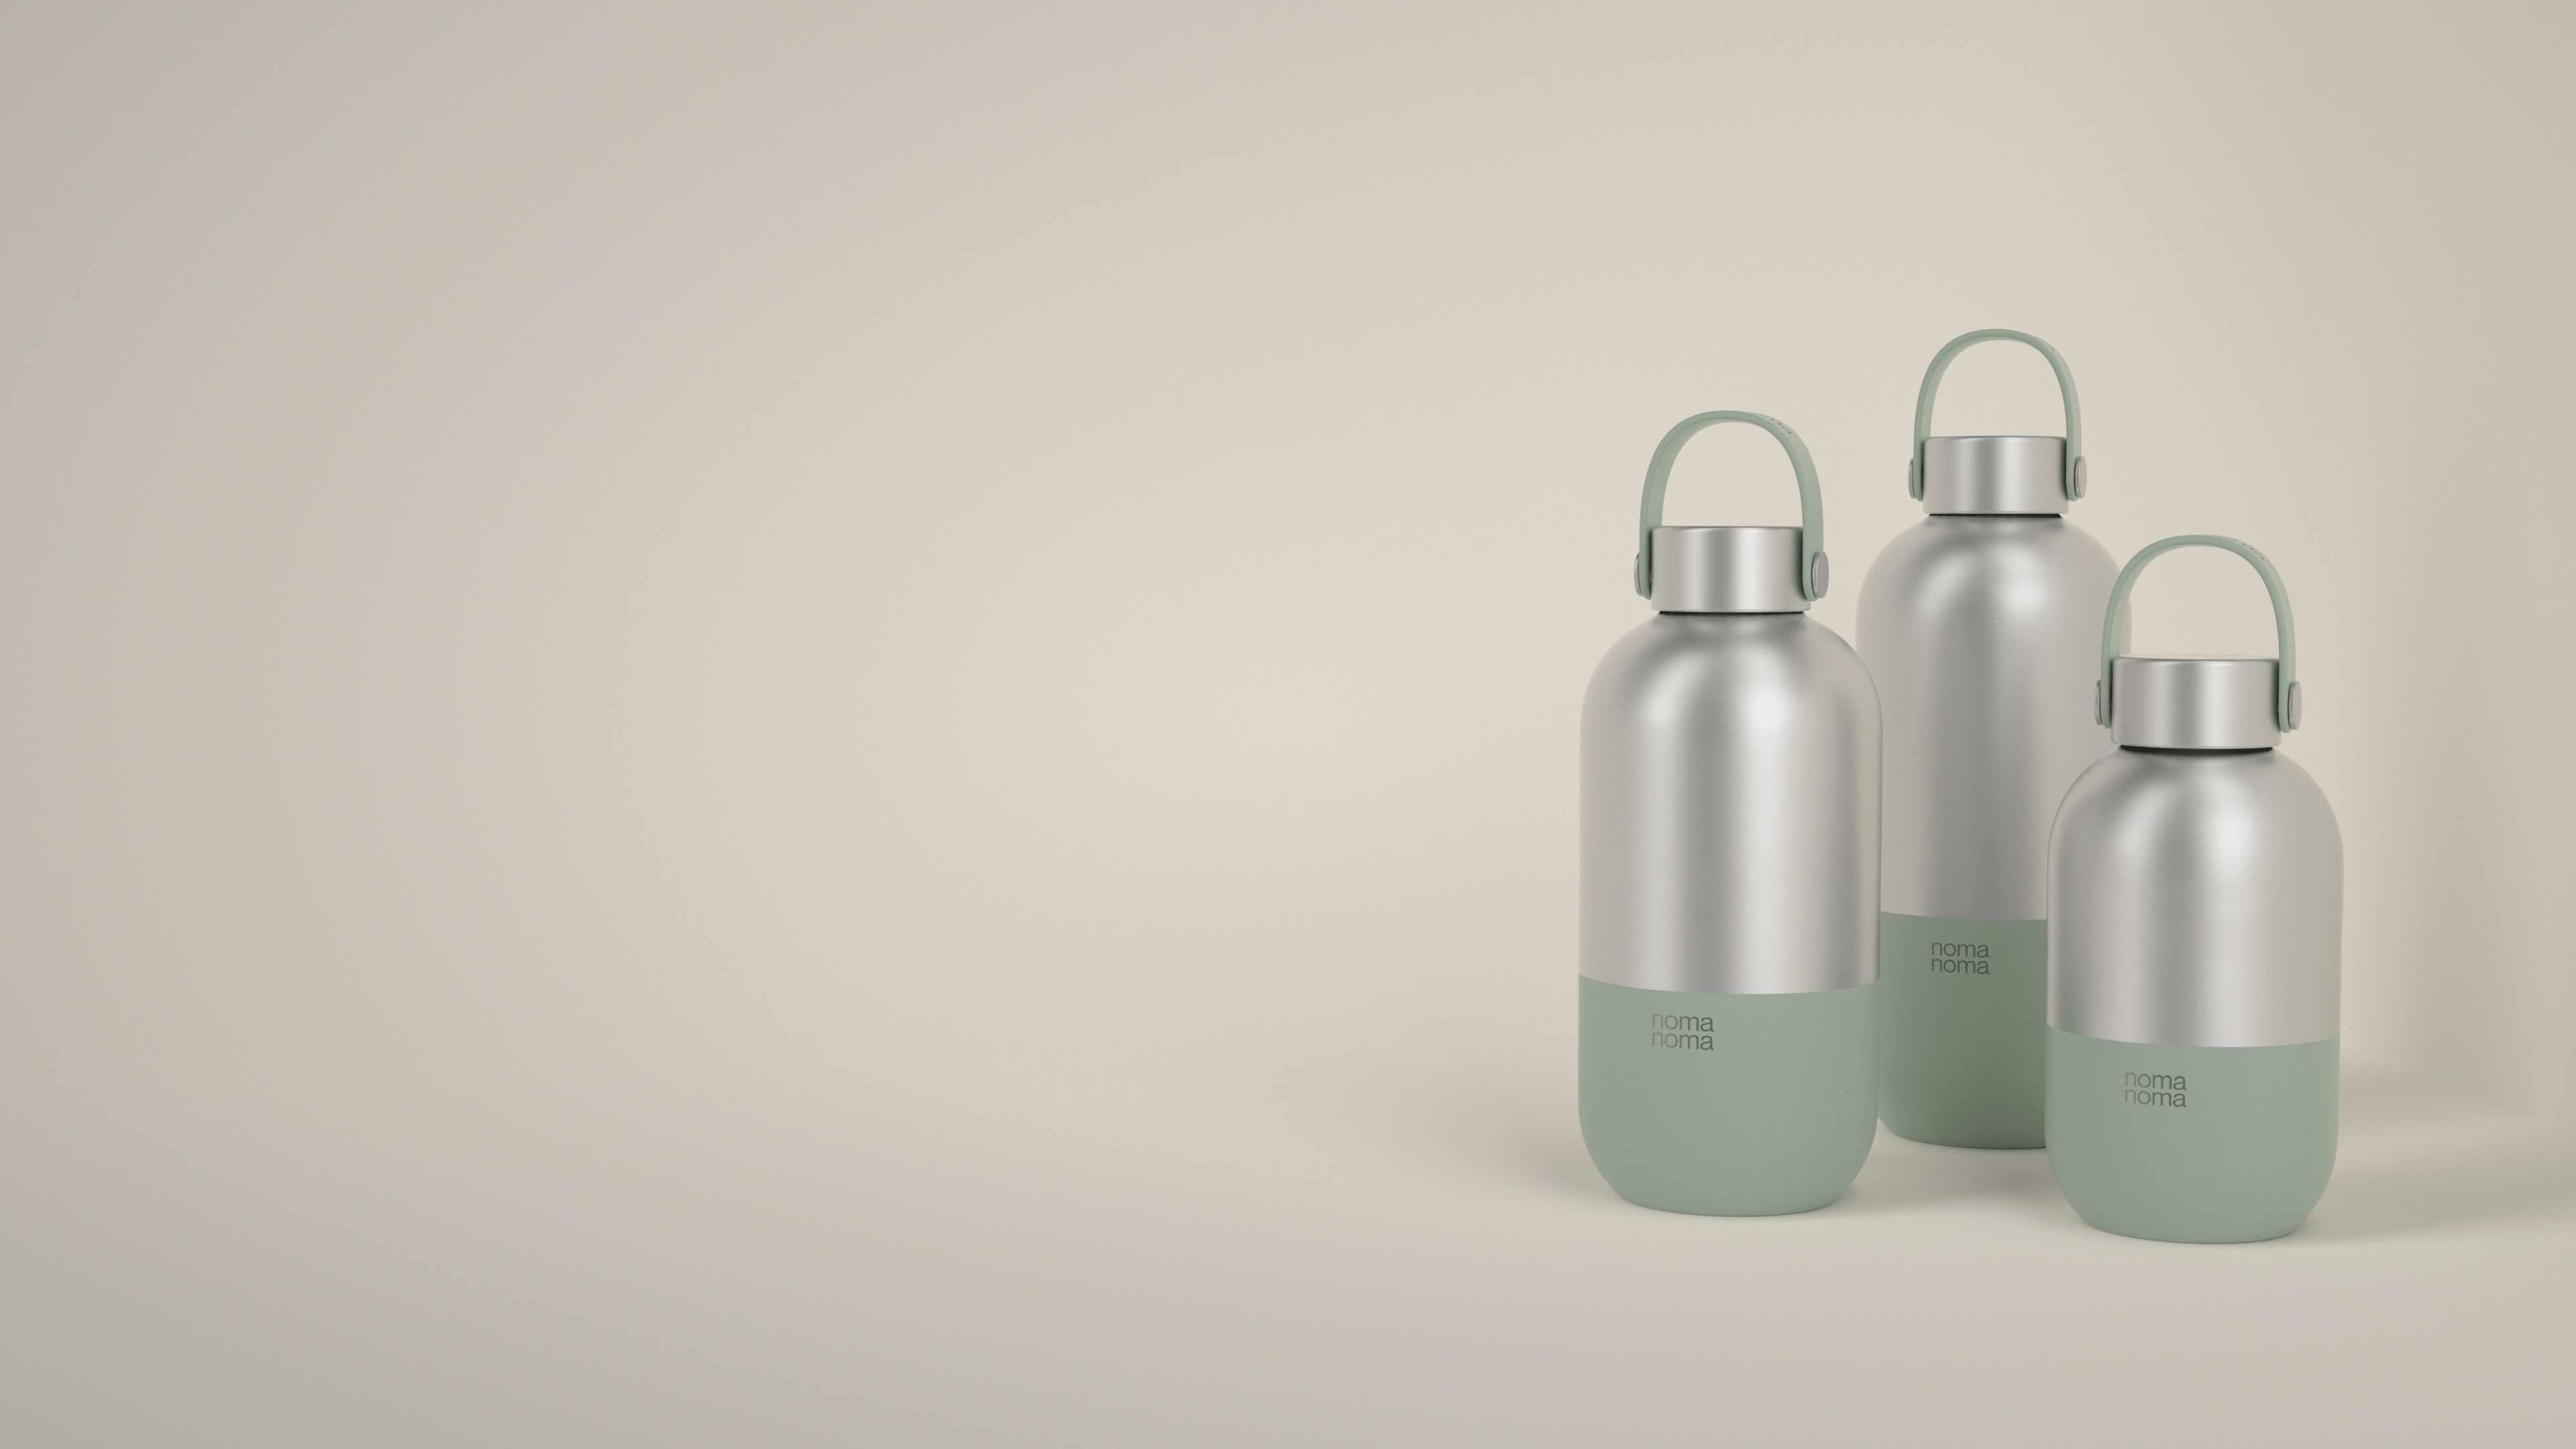 Die hellgrüne Trinkflasche von noma noma gibt es in drei praktischen Größen.